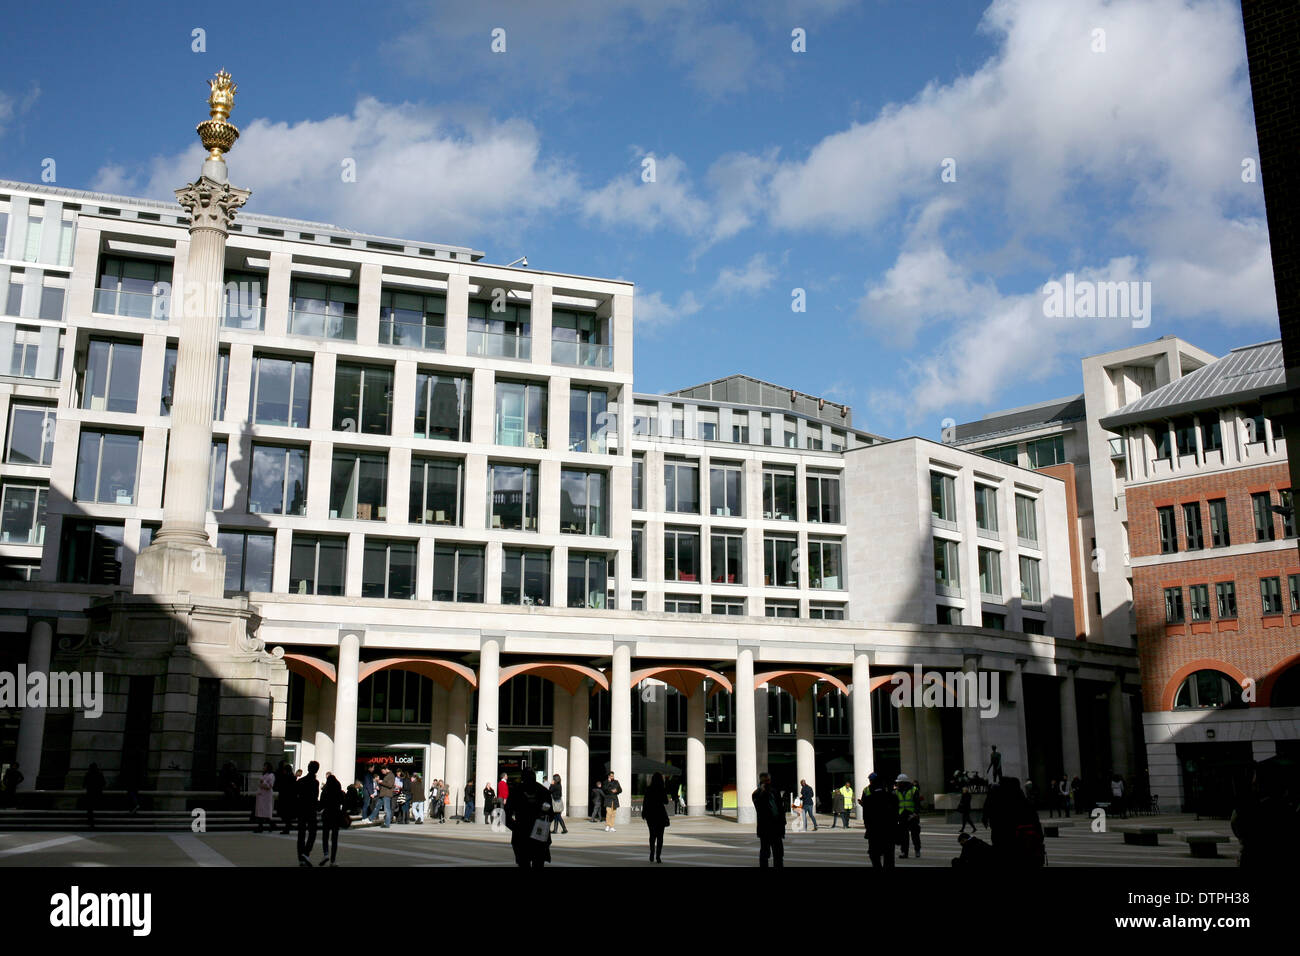 Paternoster square dans la ville de London uk 2014 Banque D'Images